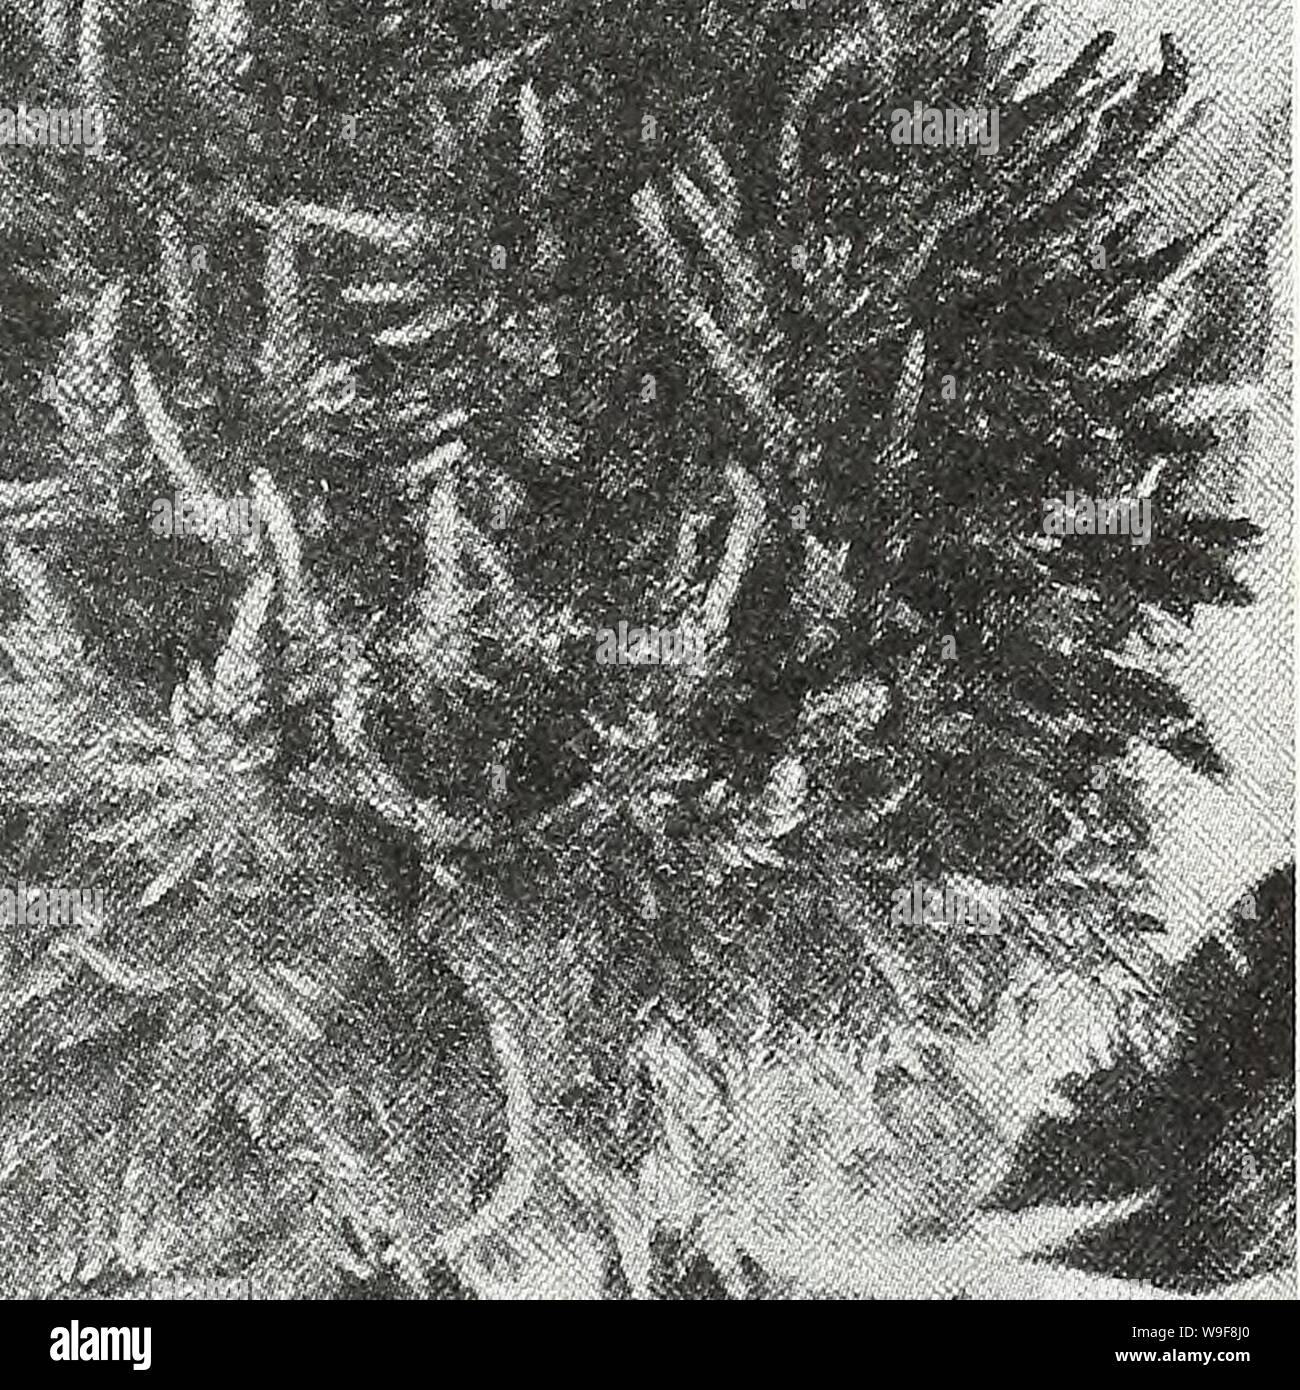 Image d'archive à partir de la page 22 de la Chalp jardin chaque printemps. Currie's garden : printemps 1931 annuel 56e année curriesgardenann19an cour : 1931 ( CURRIE BROTHERS CO, Milwaukee. WISCONSIN Wk i â ¢,'â ¢ . k-l i - f'. 1 t 1- fc. :Ii-jii3-M"S".  IfeCL :II"Lftf.''fsl Celosia plumosa OU EMPANACHÉ COCKSCOMB Demi-hardy annuelles, produisant de grandes fleurs à plumes de bril-   liant les couleurs tout au long de la saison. La plante sont des grande, formant des buissons, ramification pyramidale librement et supporter les nombreuses plumes qui ressemblent à des plumes d'autruche bien au-dessus du feuillage. Les plumes peuvent être coupées et dr Banque D'Images